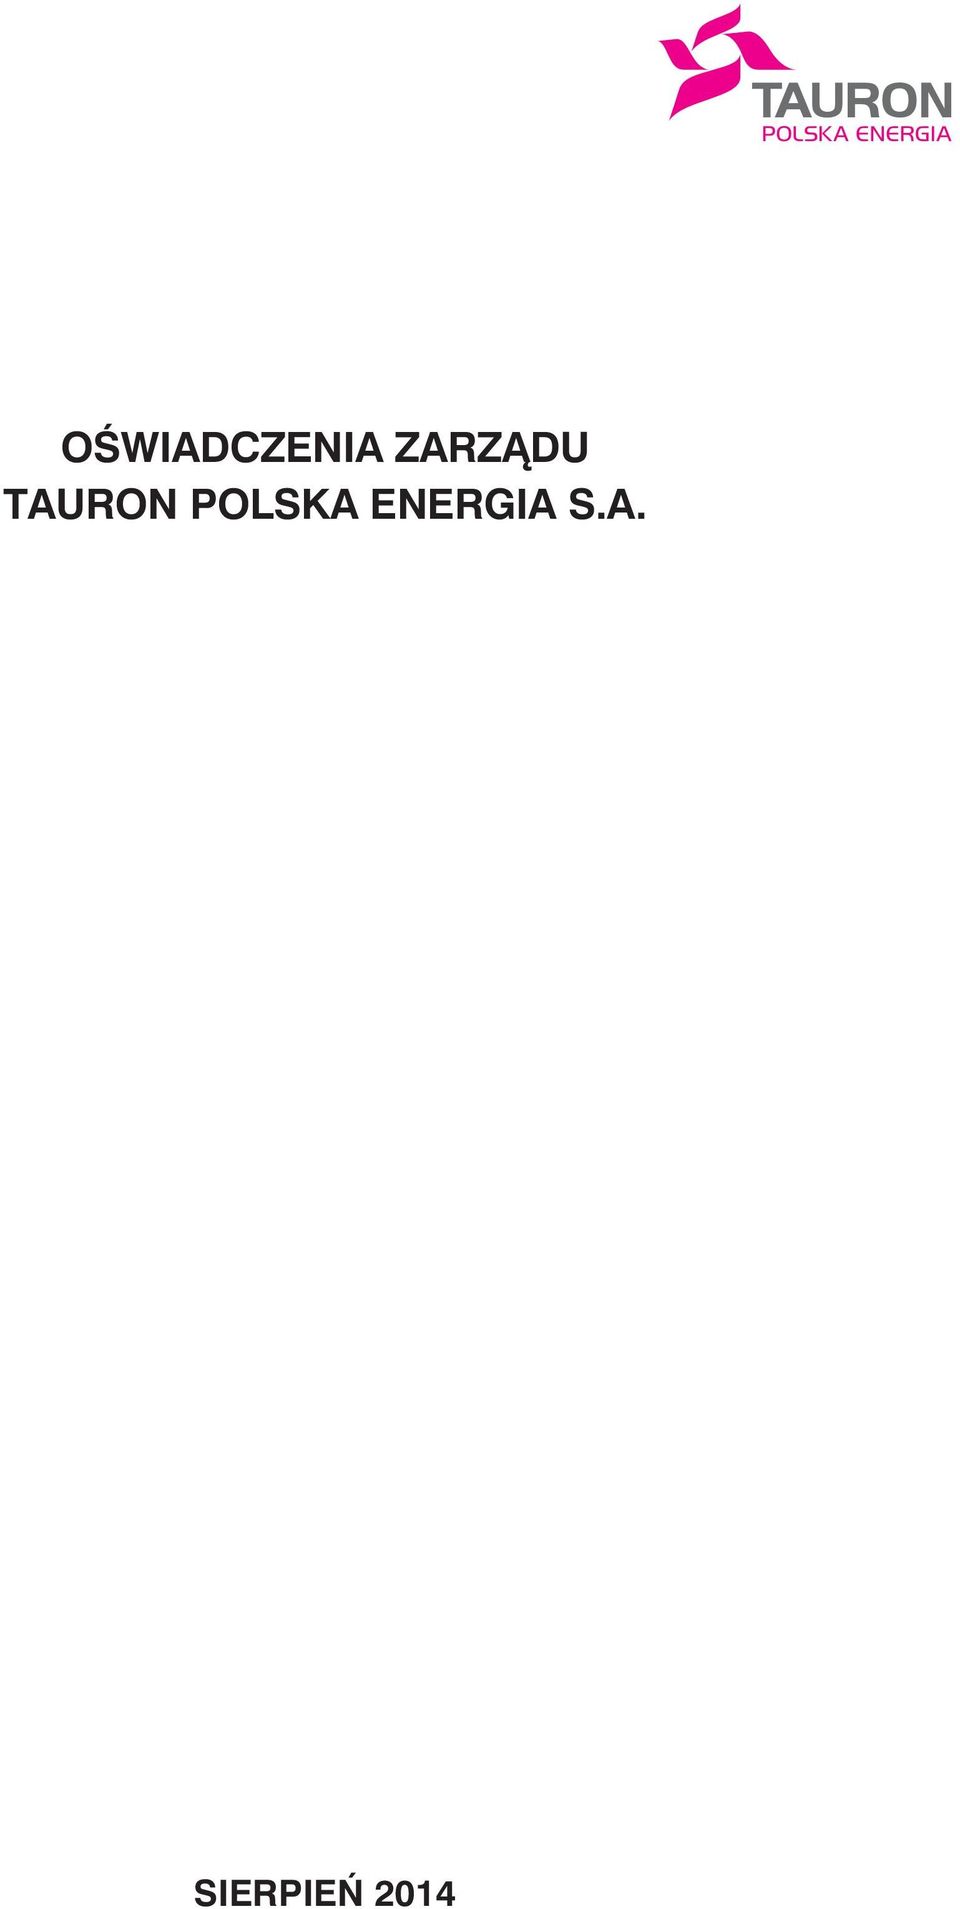 POLSKA ENERGIA